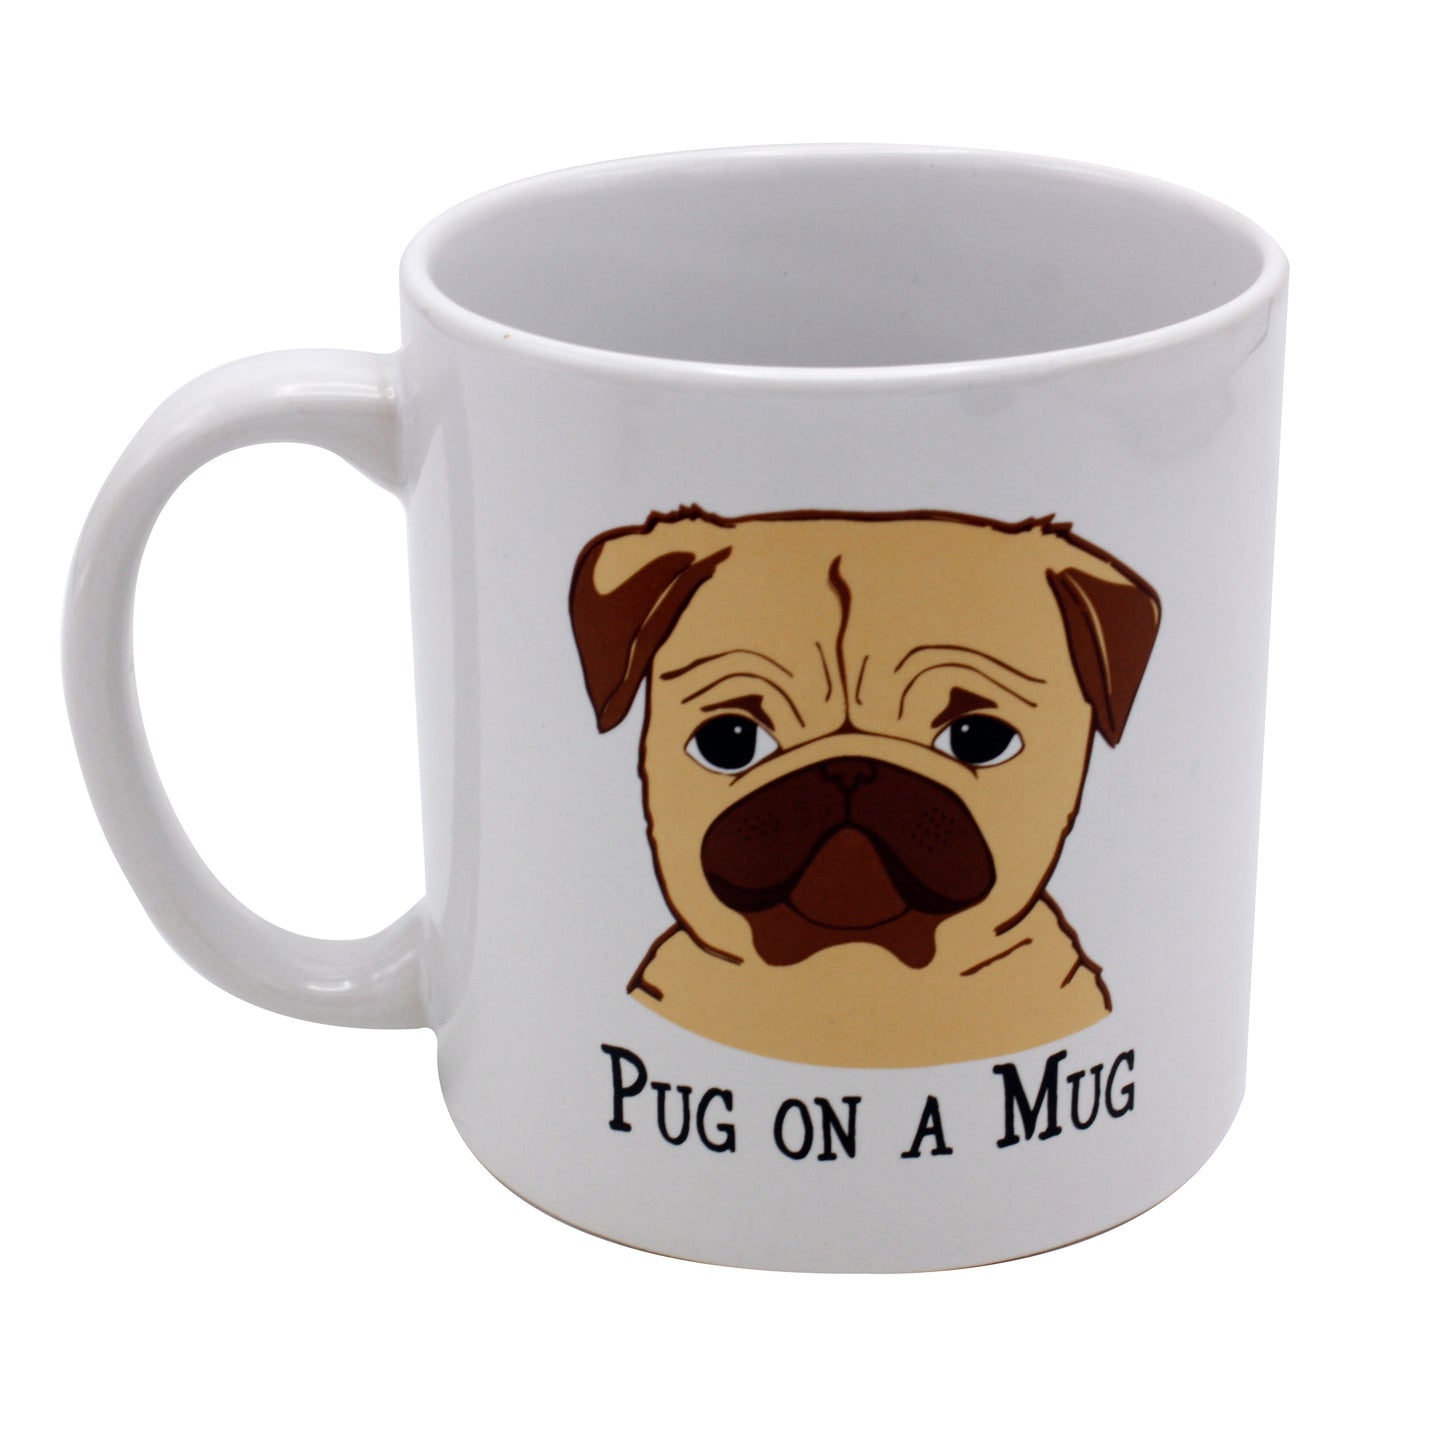 Giant Pug on a Mug